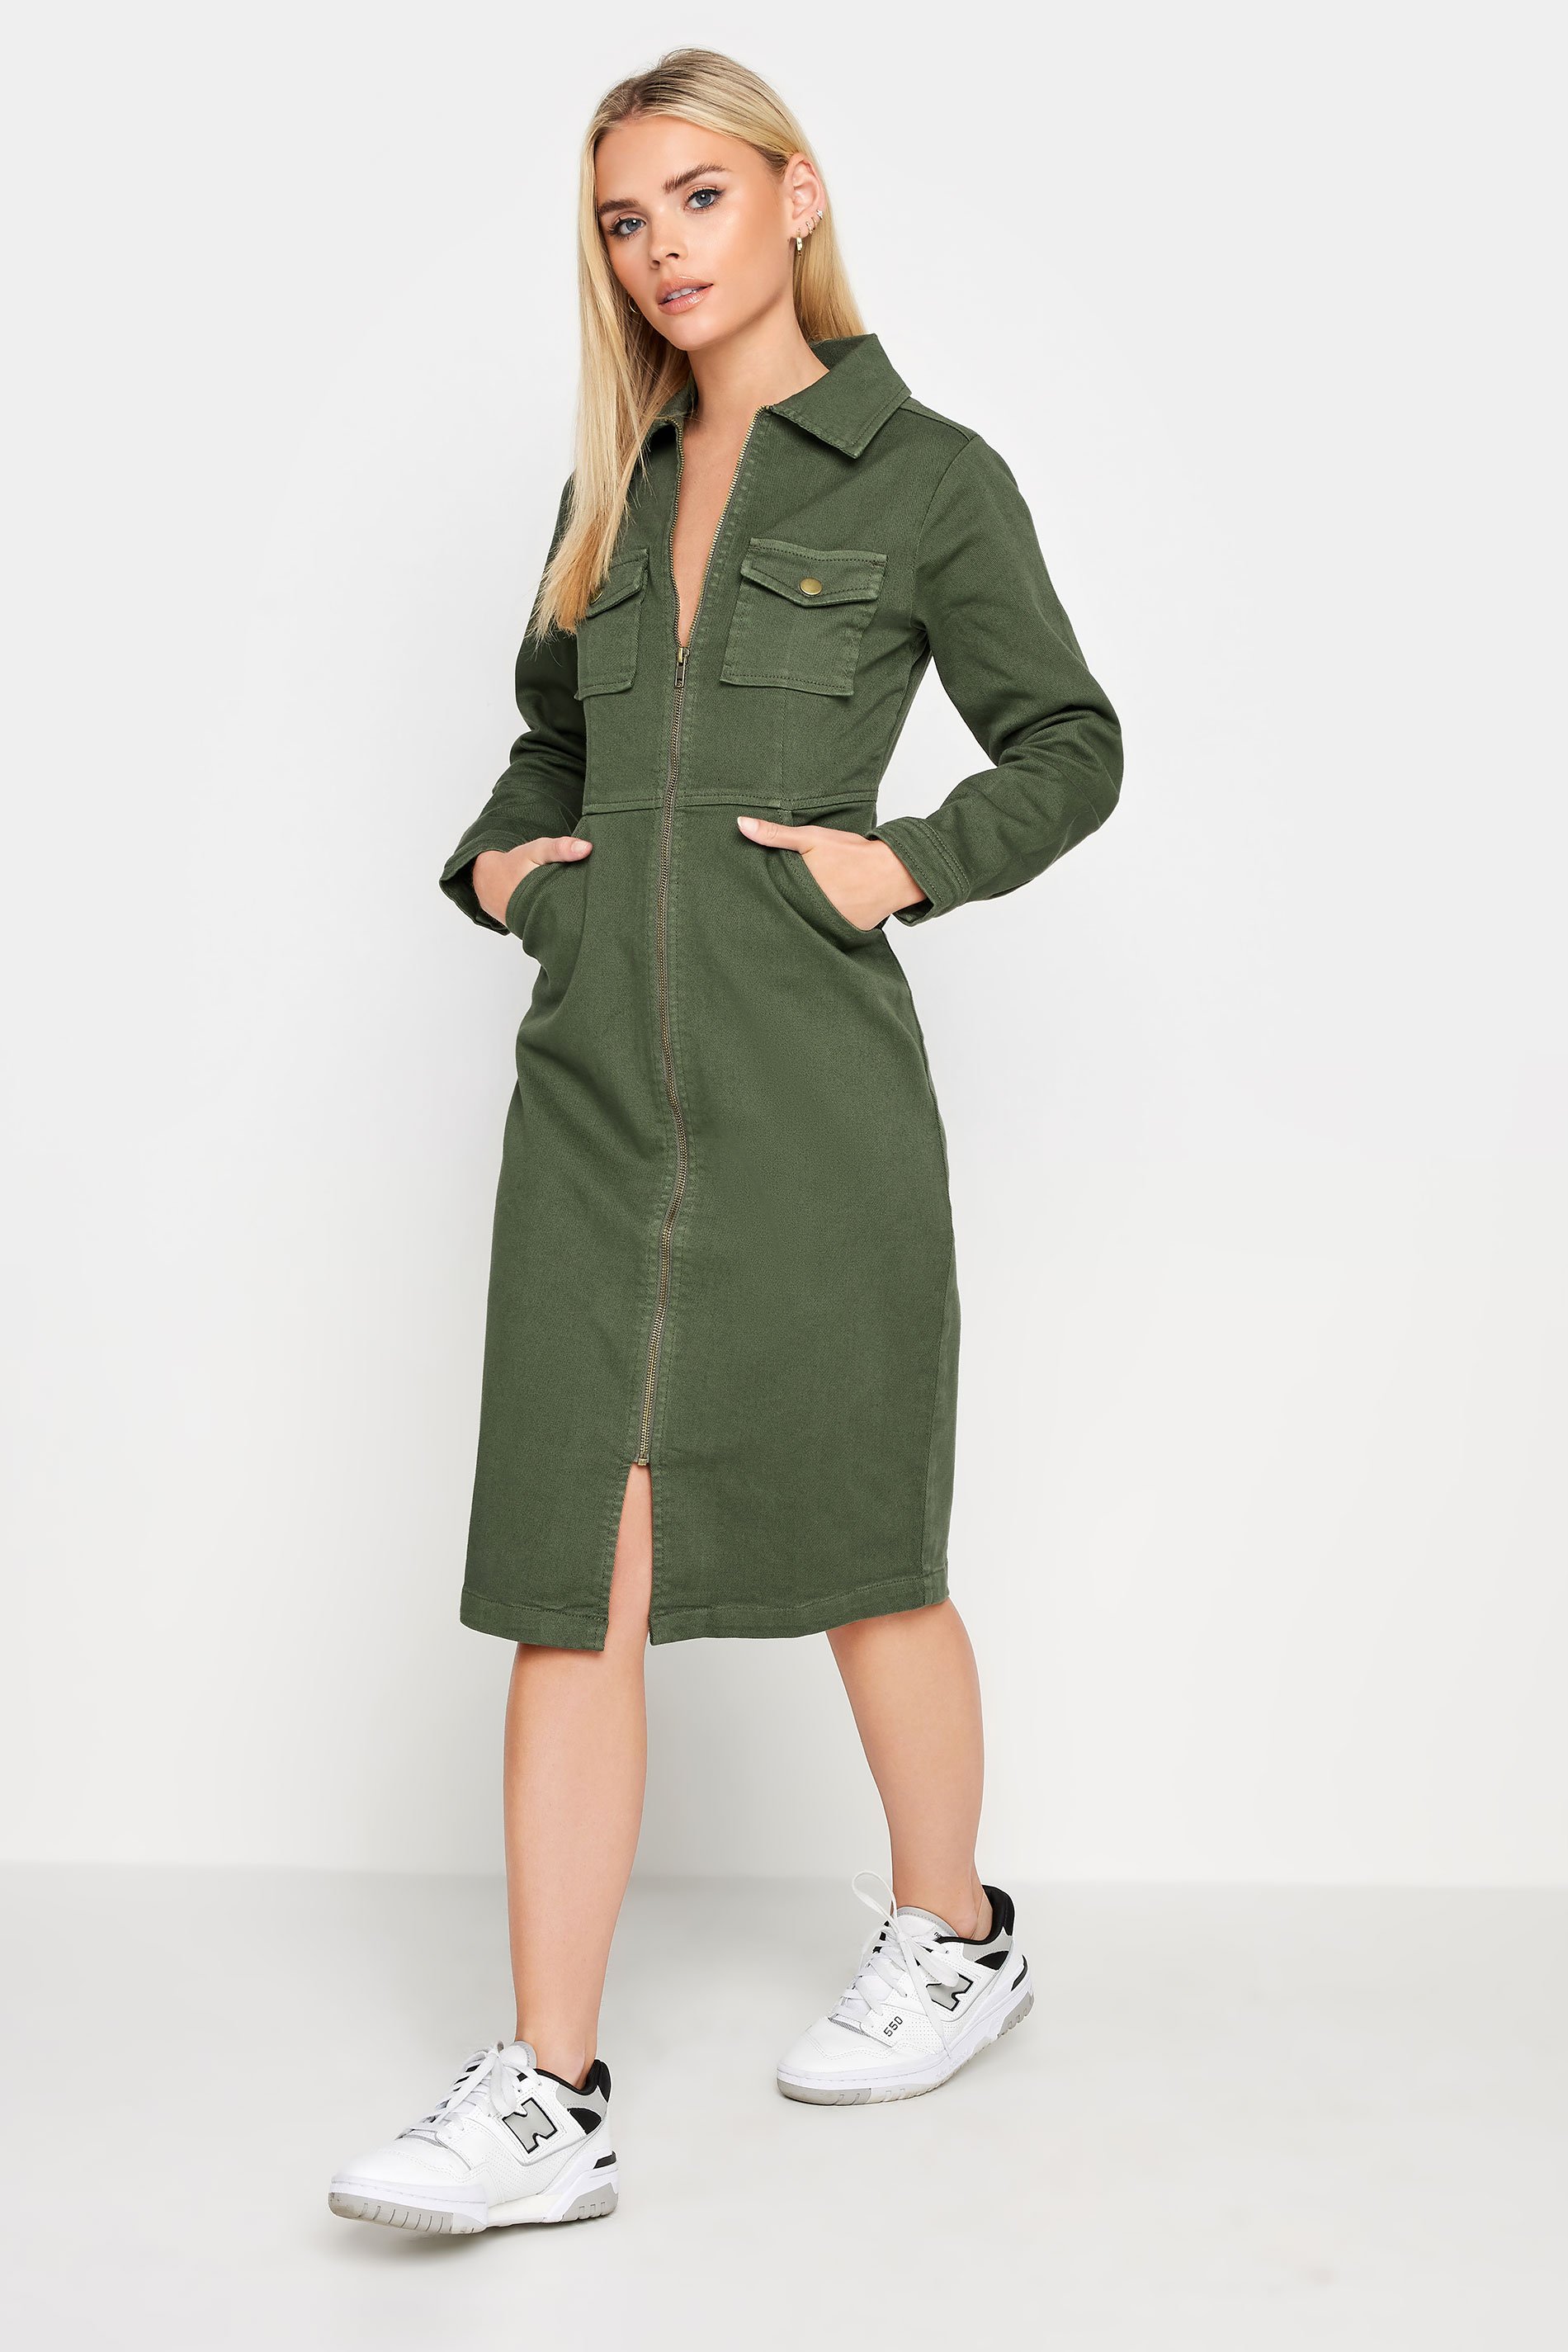 PixieGirl Petite Khaki Green Zip Denim Midi Dress | PixieGirl  1